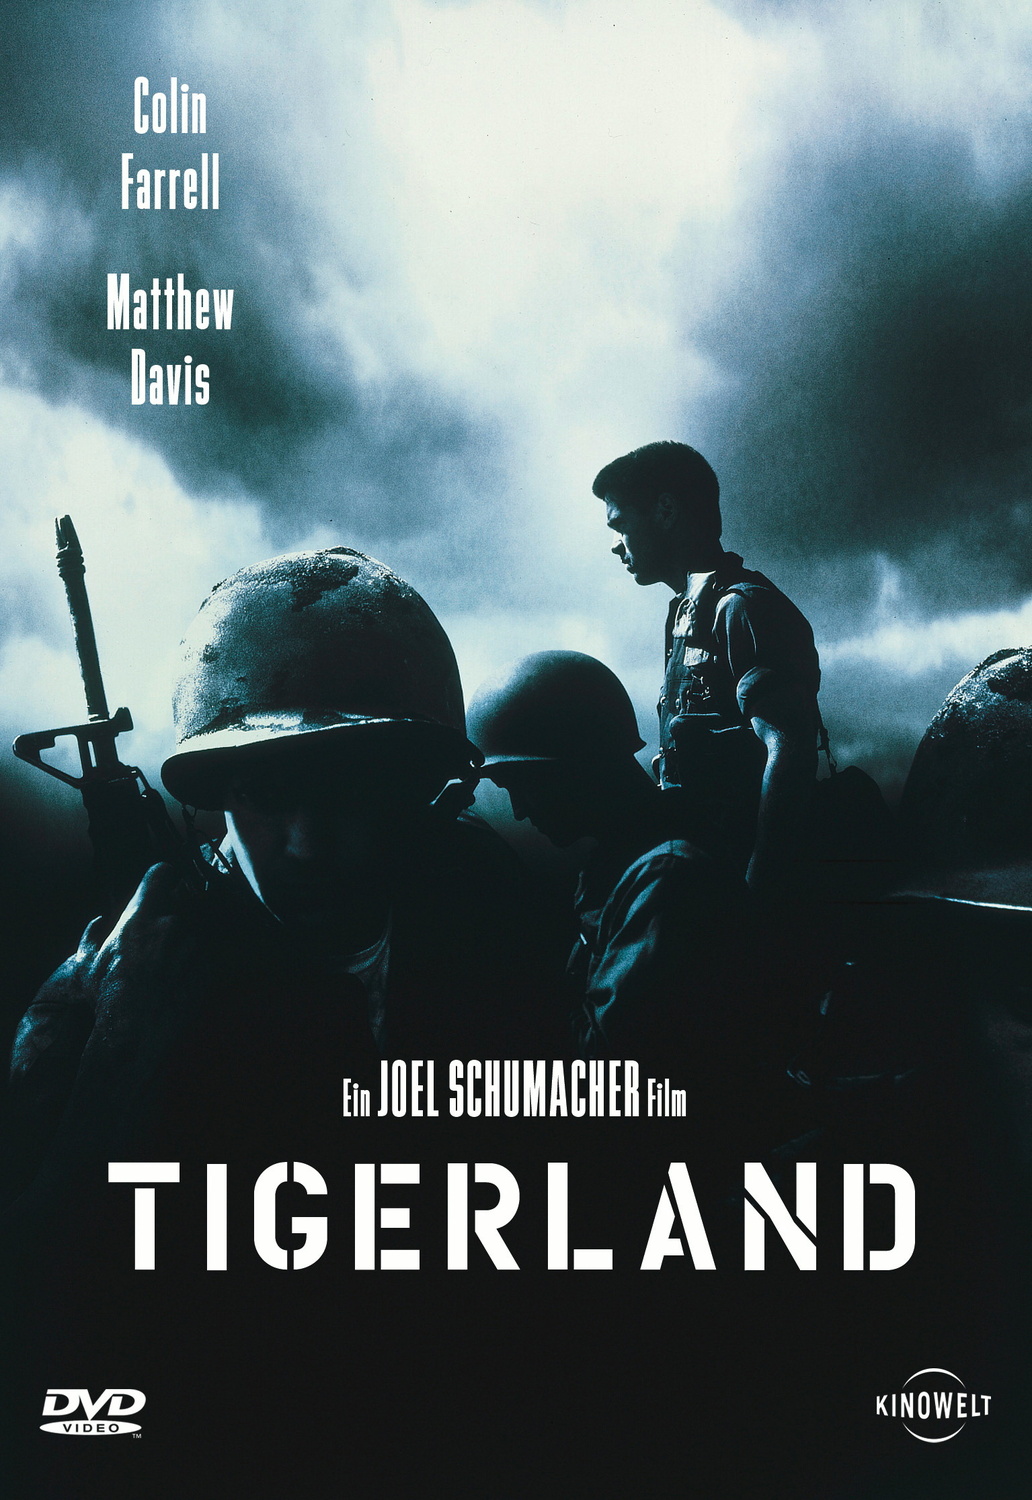 Tigerland von Studiocanal